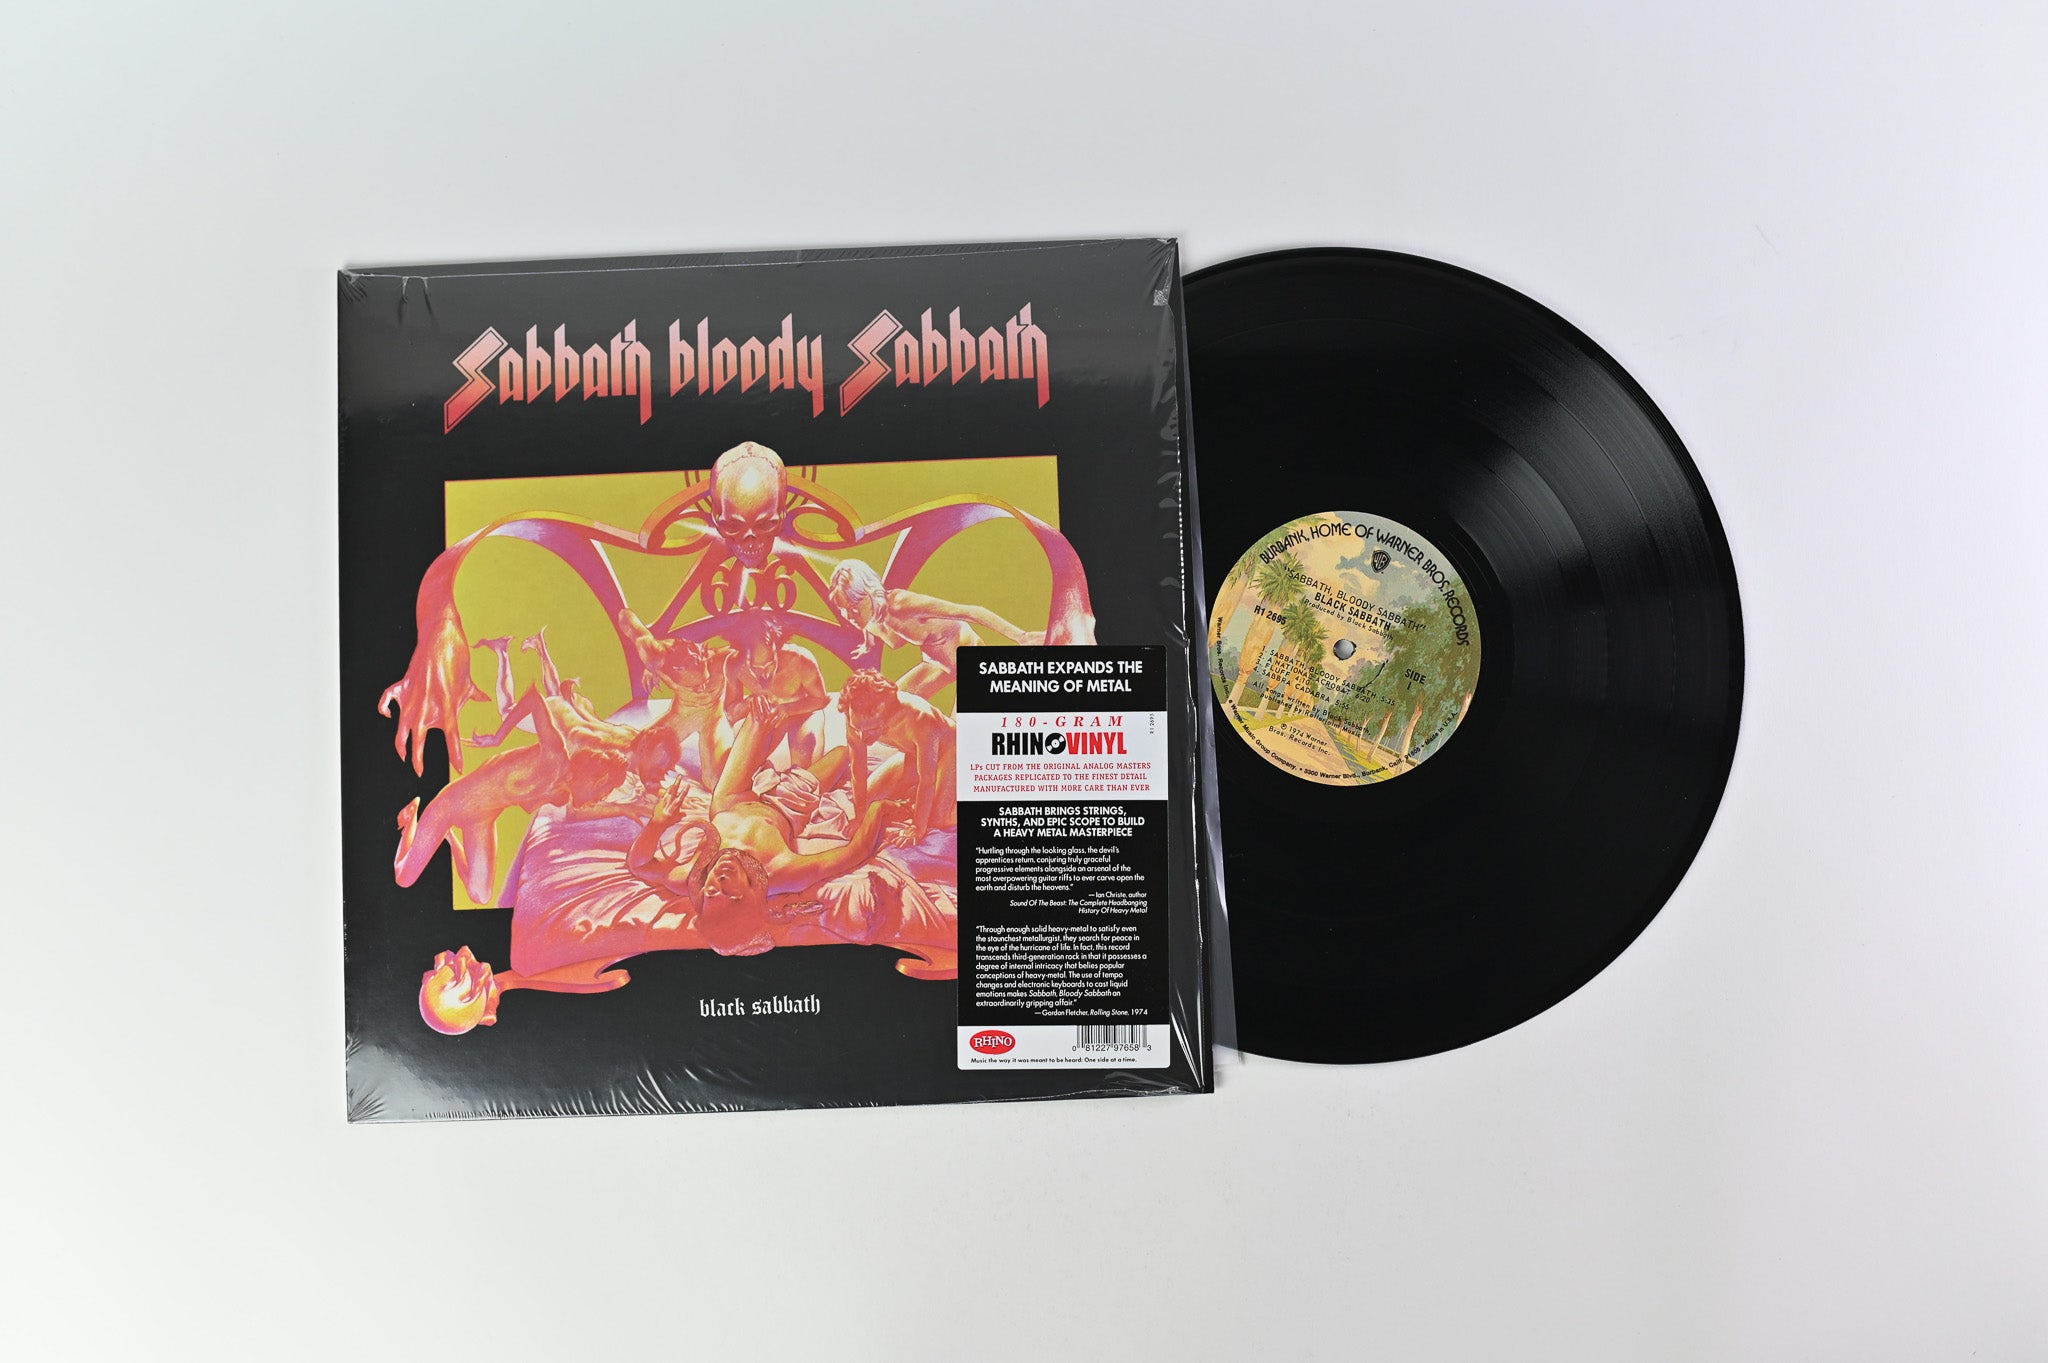 Black Sabbath - Sabbath Bloody Sabbath on Rhino WB 180 Gram Reissue